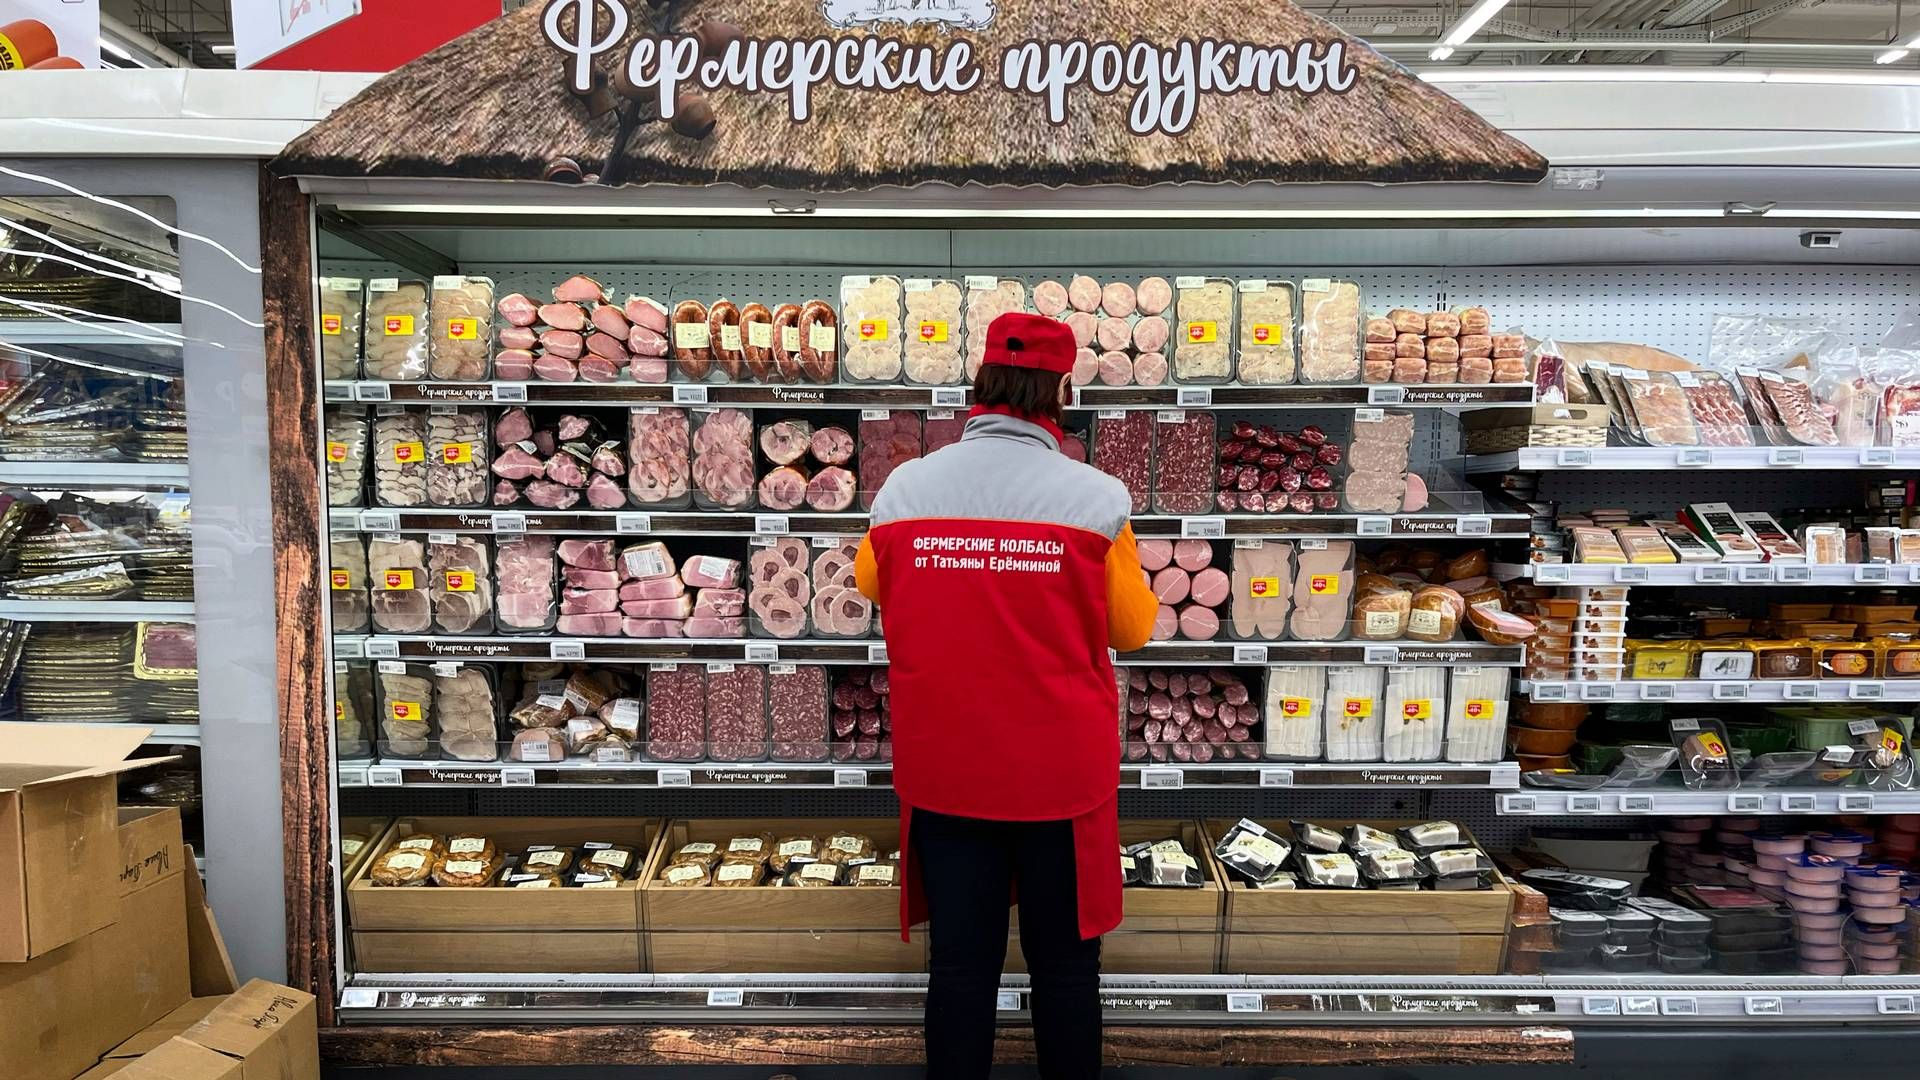 Flere nabolande til Rusland har ifølge Toldstyrelsen hjulpet Rusland med at omgå sanktionerne for den ulovlige angrebskrig i Ukraine. | Foto: -/AP/Ritzau Scanpix